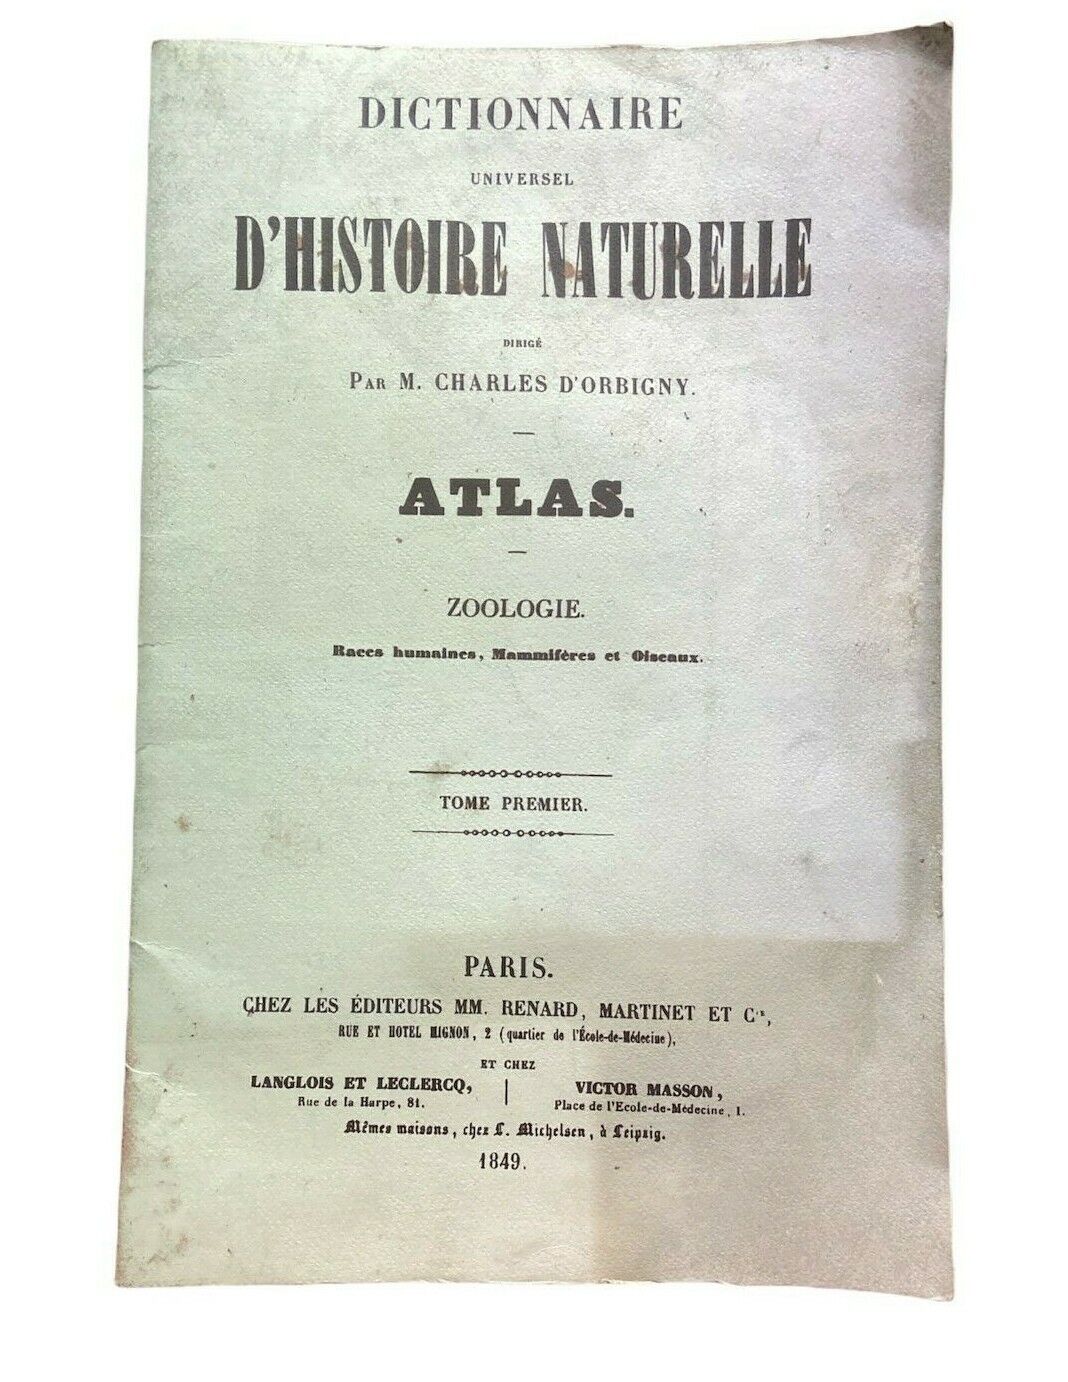 Libri - Dictionnaire universel d'histoire naturelle